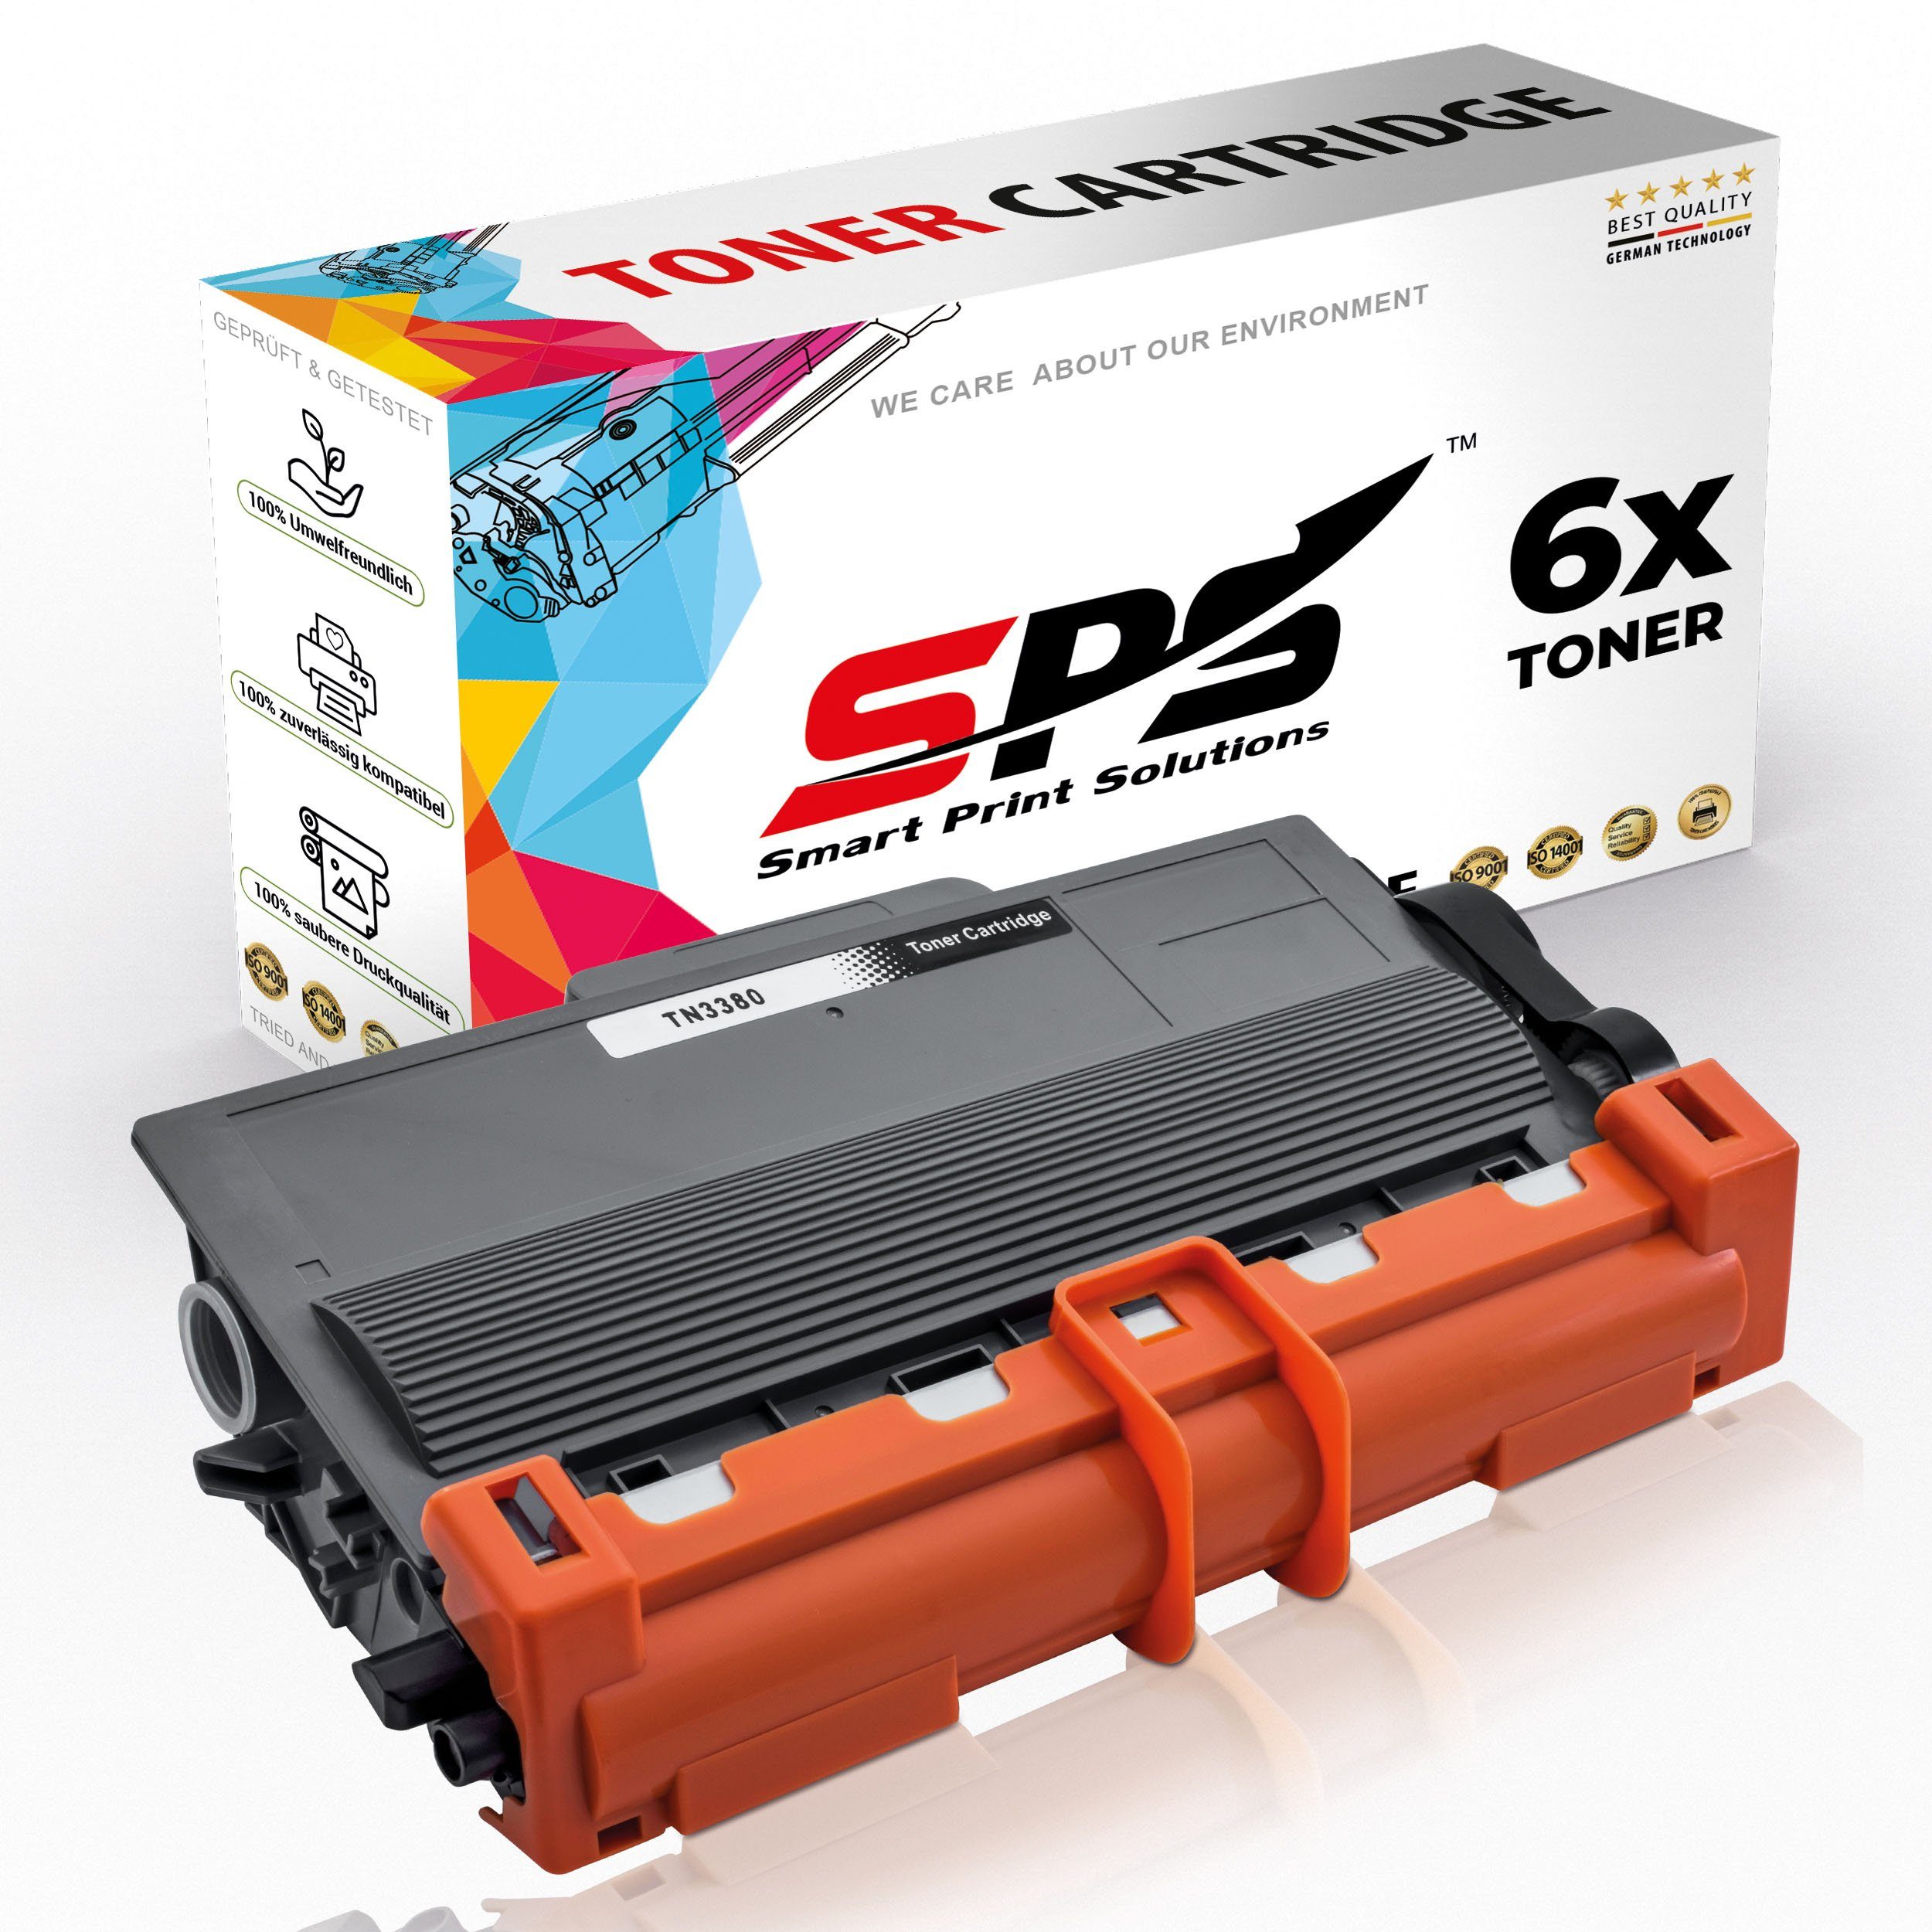 SPS Tonerkartusche Kompatibel für Brother MFC-8510 TN-3380, (6er Pack)